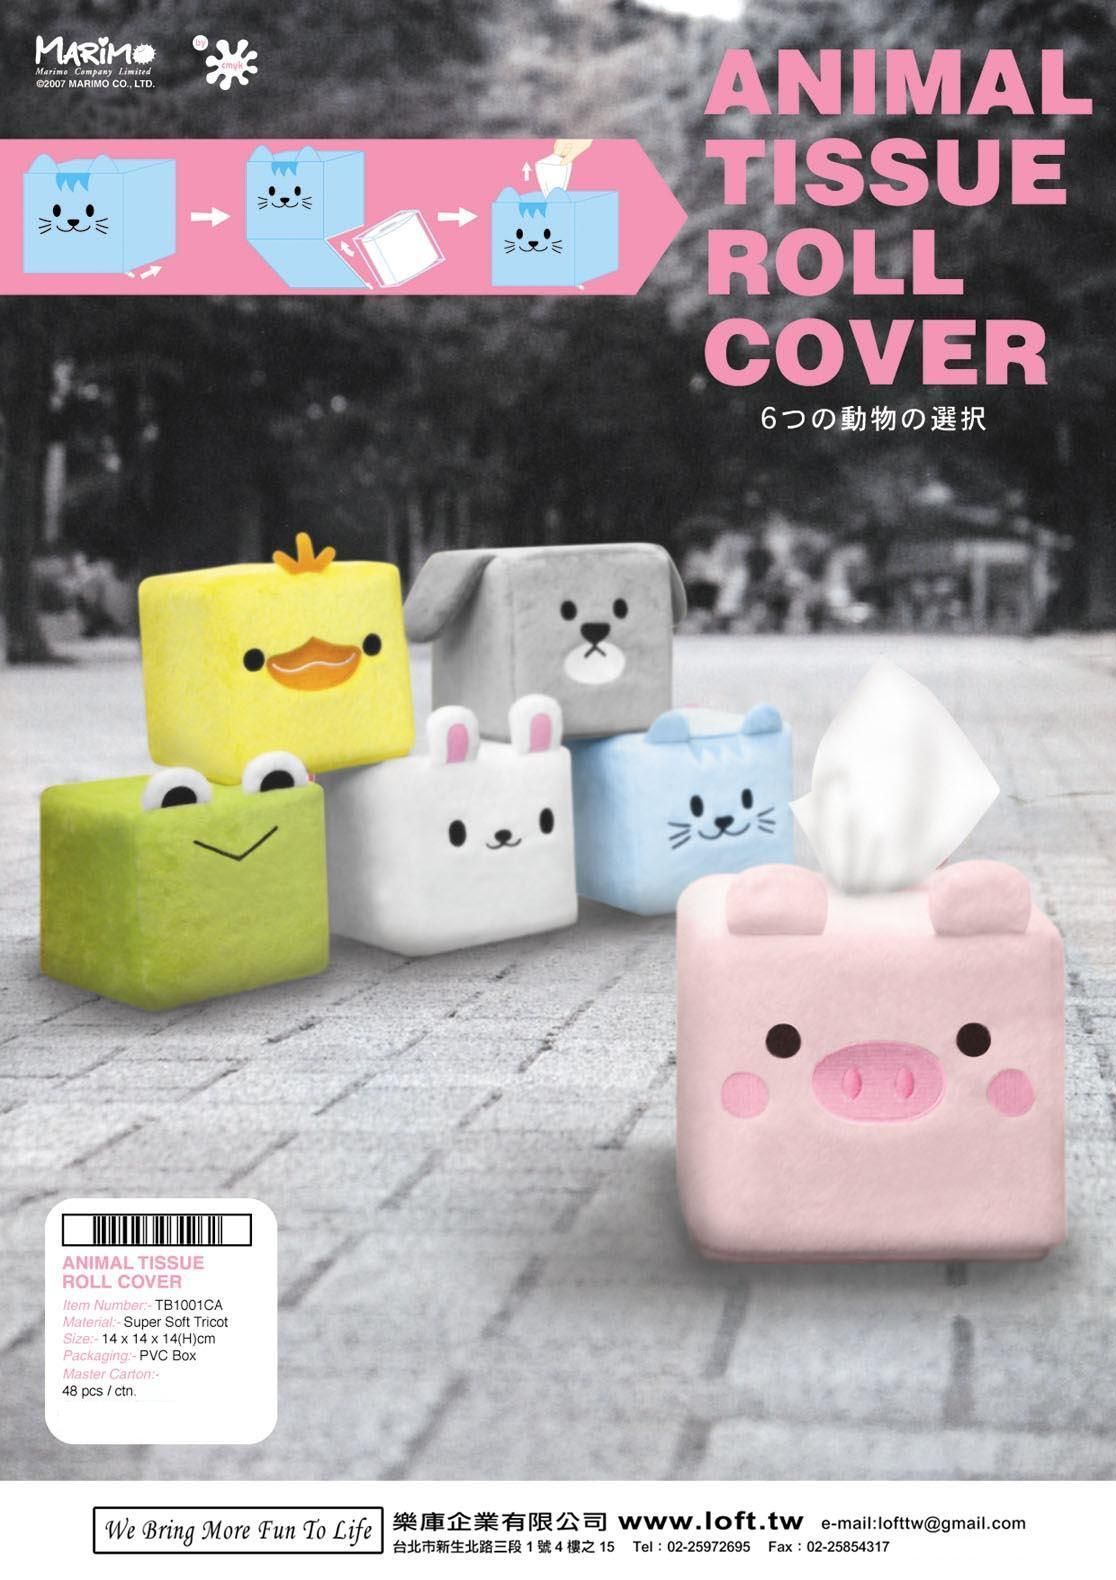 [(17)Animal+tissue+roll+cover+catalog_ok1.jpg]